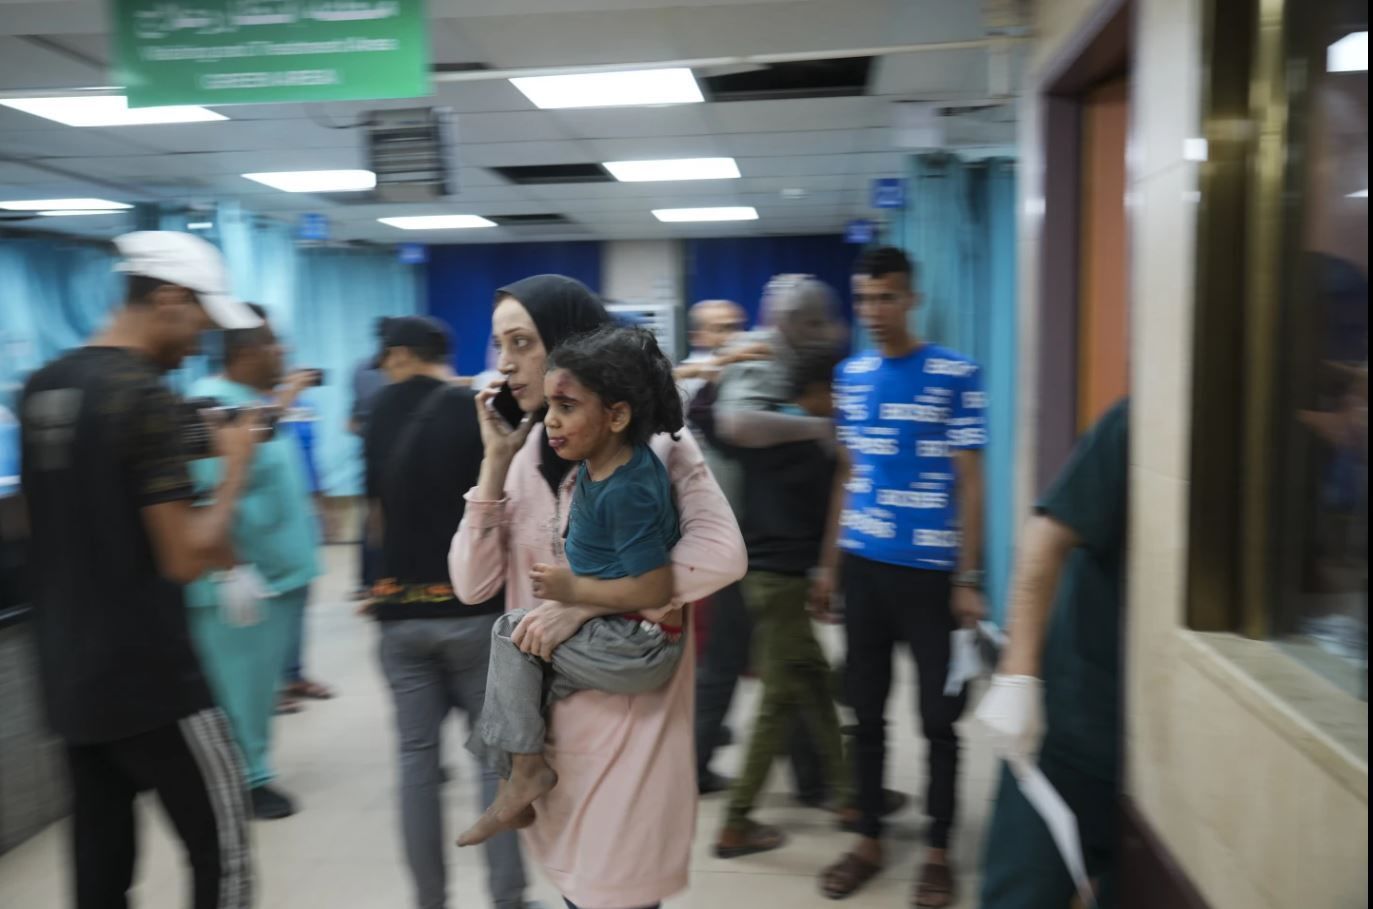 قطع برق در بیمارستان اصلی غزه/ درخواست اضطراری برای رساندن سوخت به منطقه